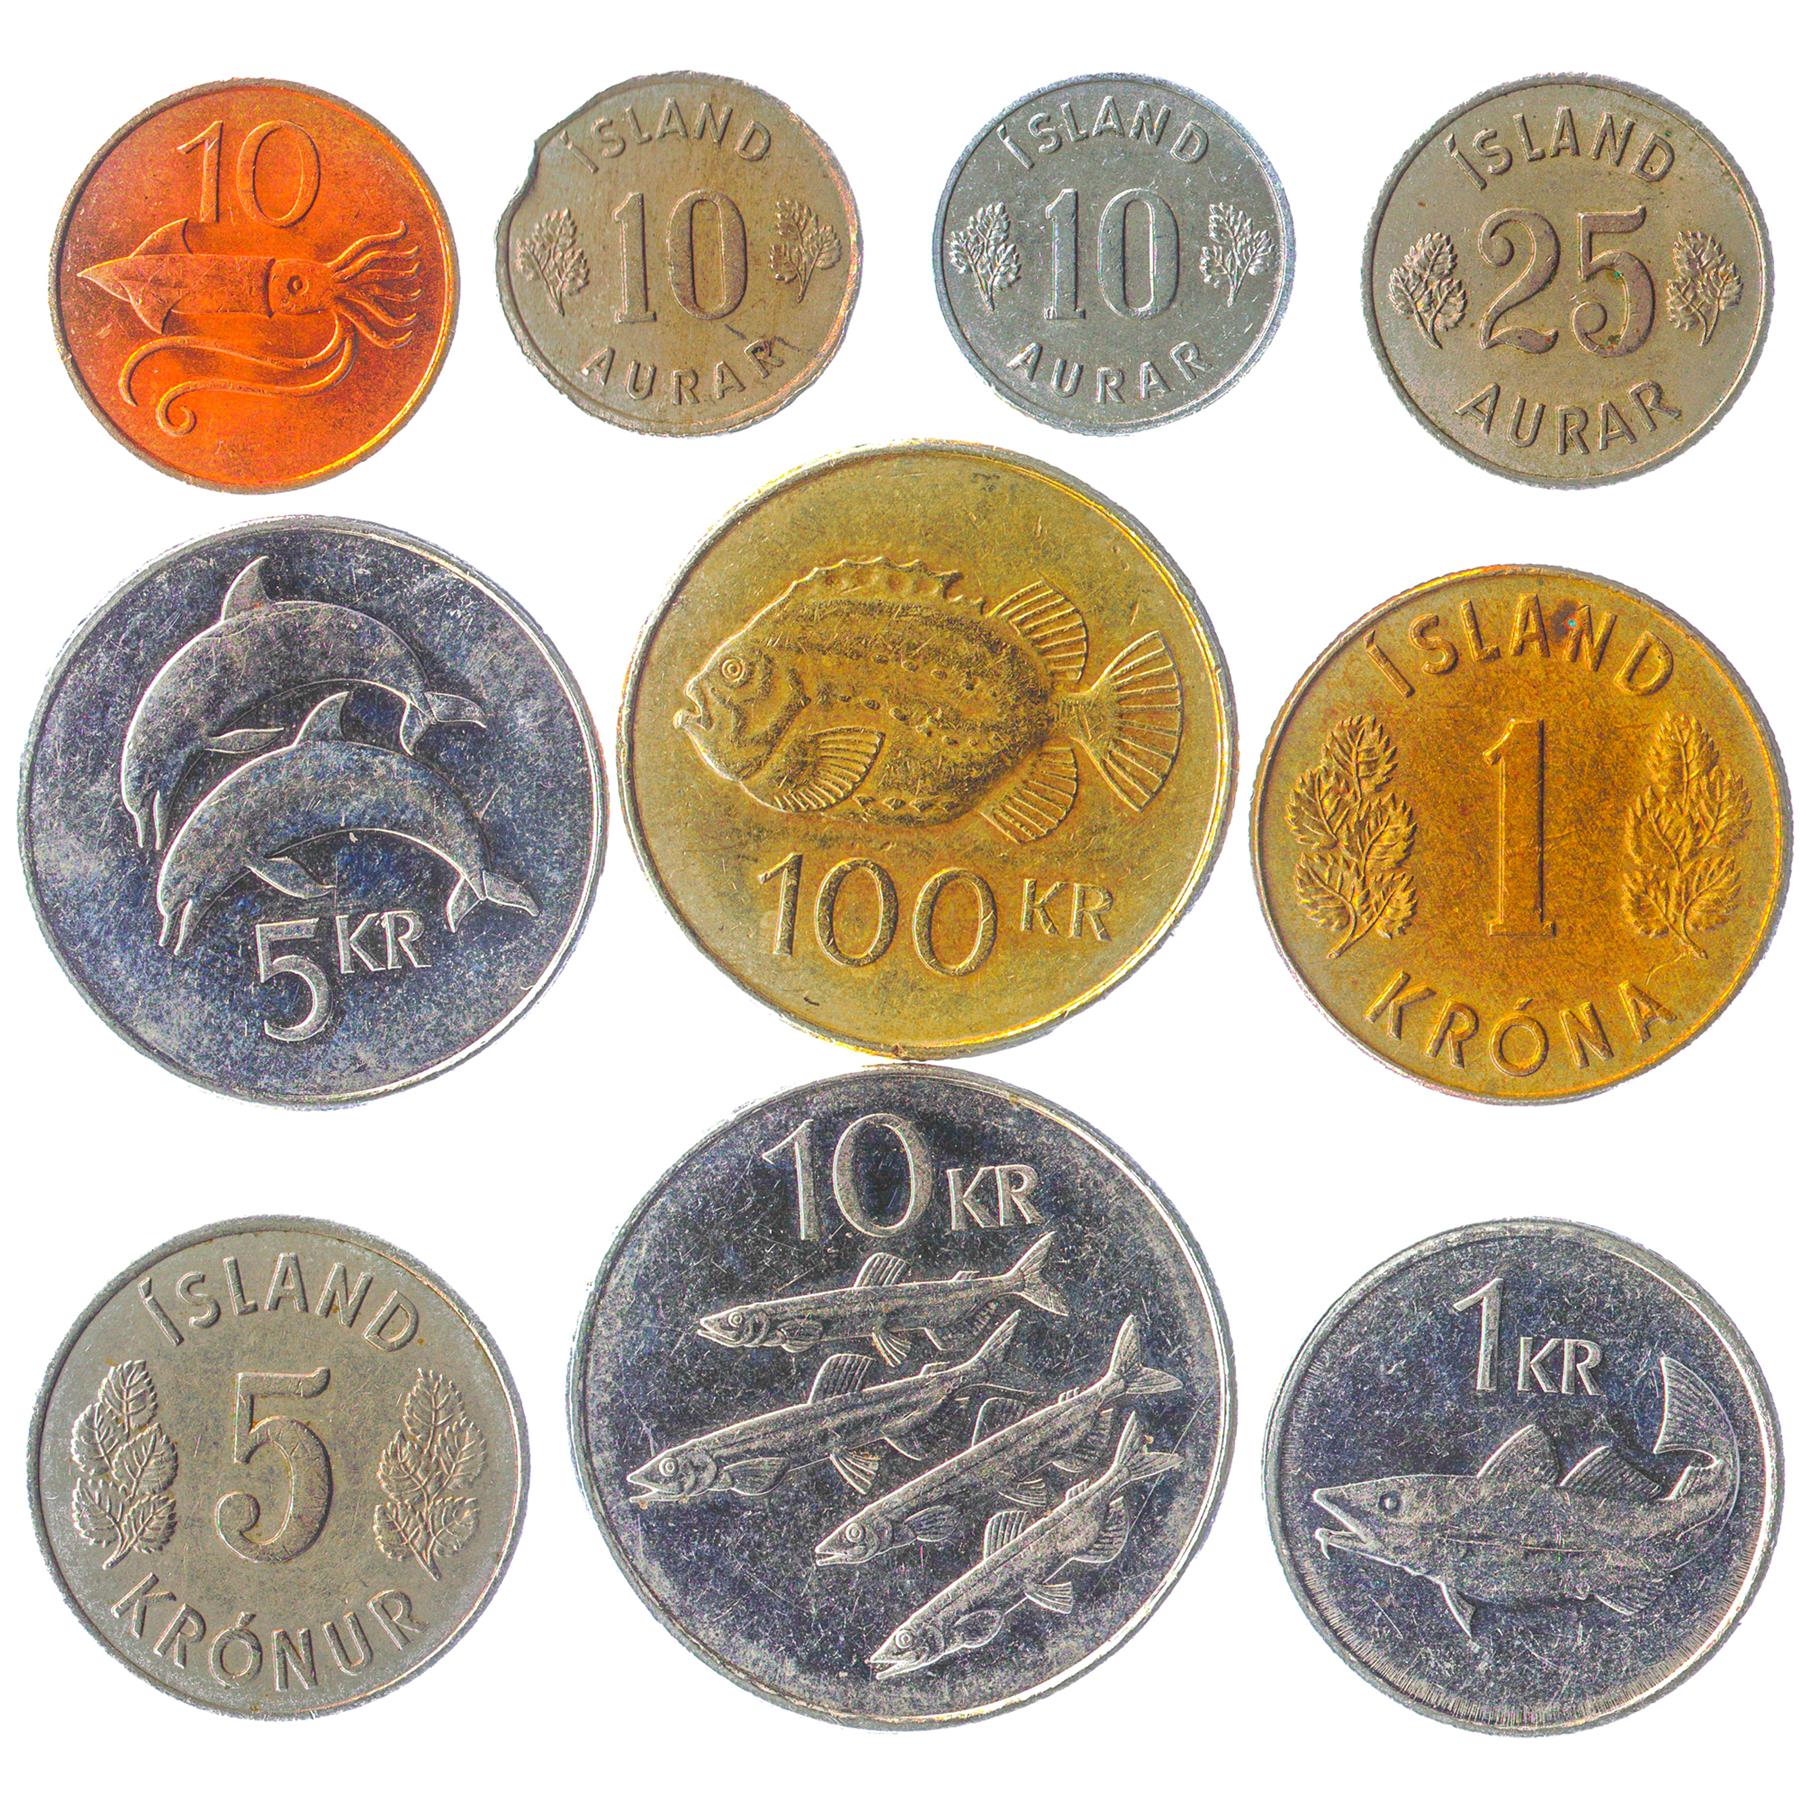 Mixed Iceland Coins | Scandinavian Island | Icelander Money | Aurar Kr